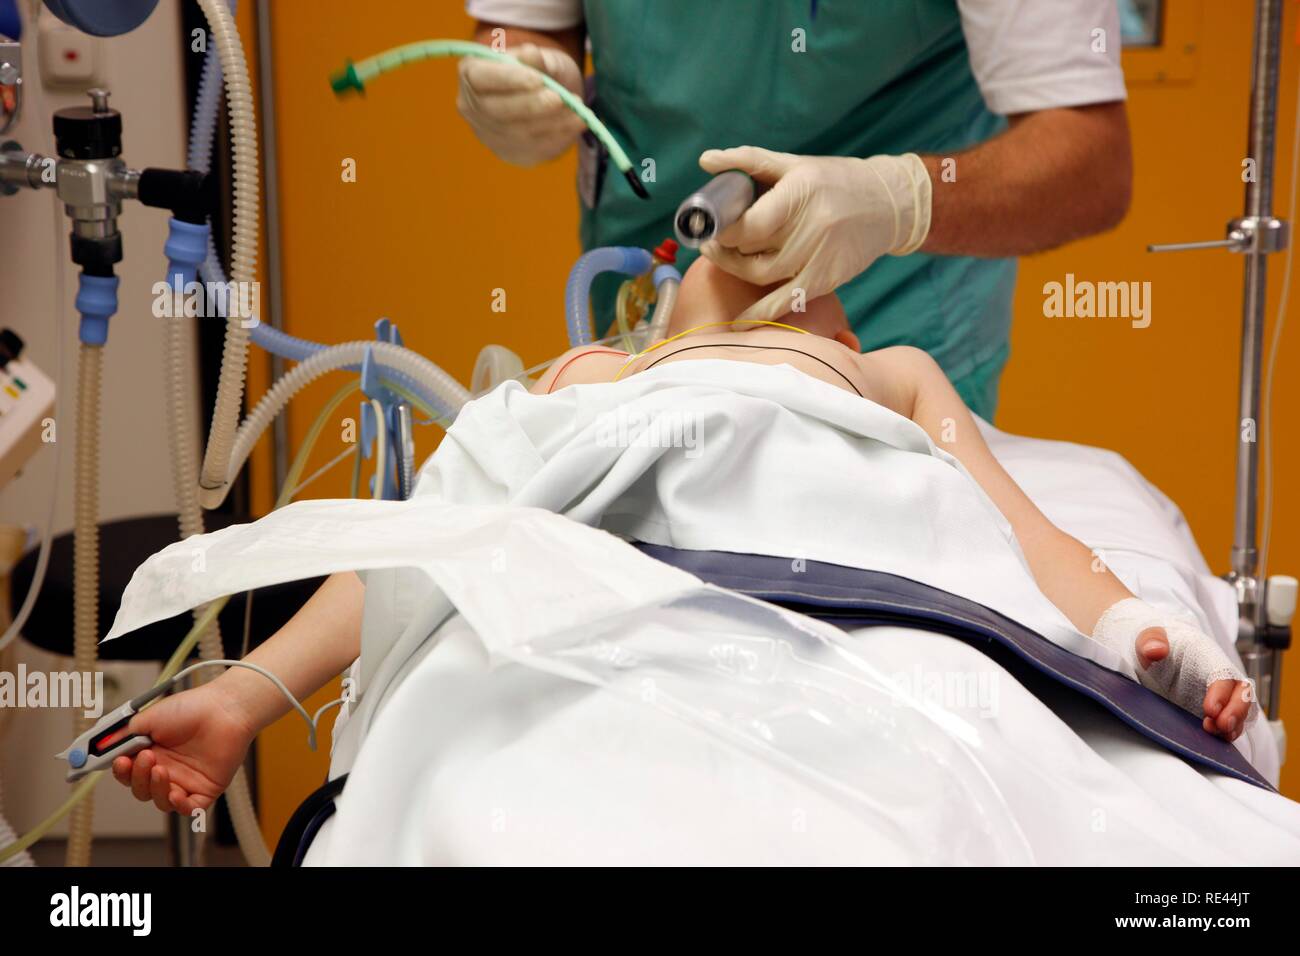 Bambino di essere preparati per la chirurgia, anestesista intubating il paziente per la ventilazione durante la chirurgia, nella sala di anestesia Foto Stock